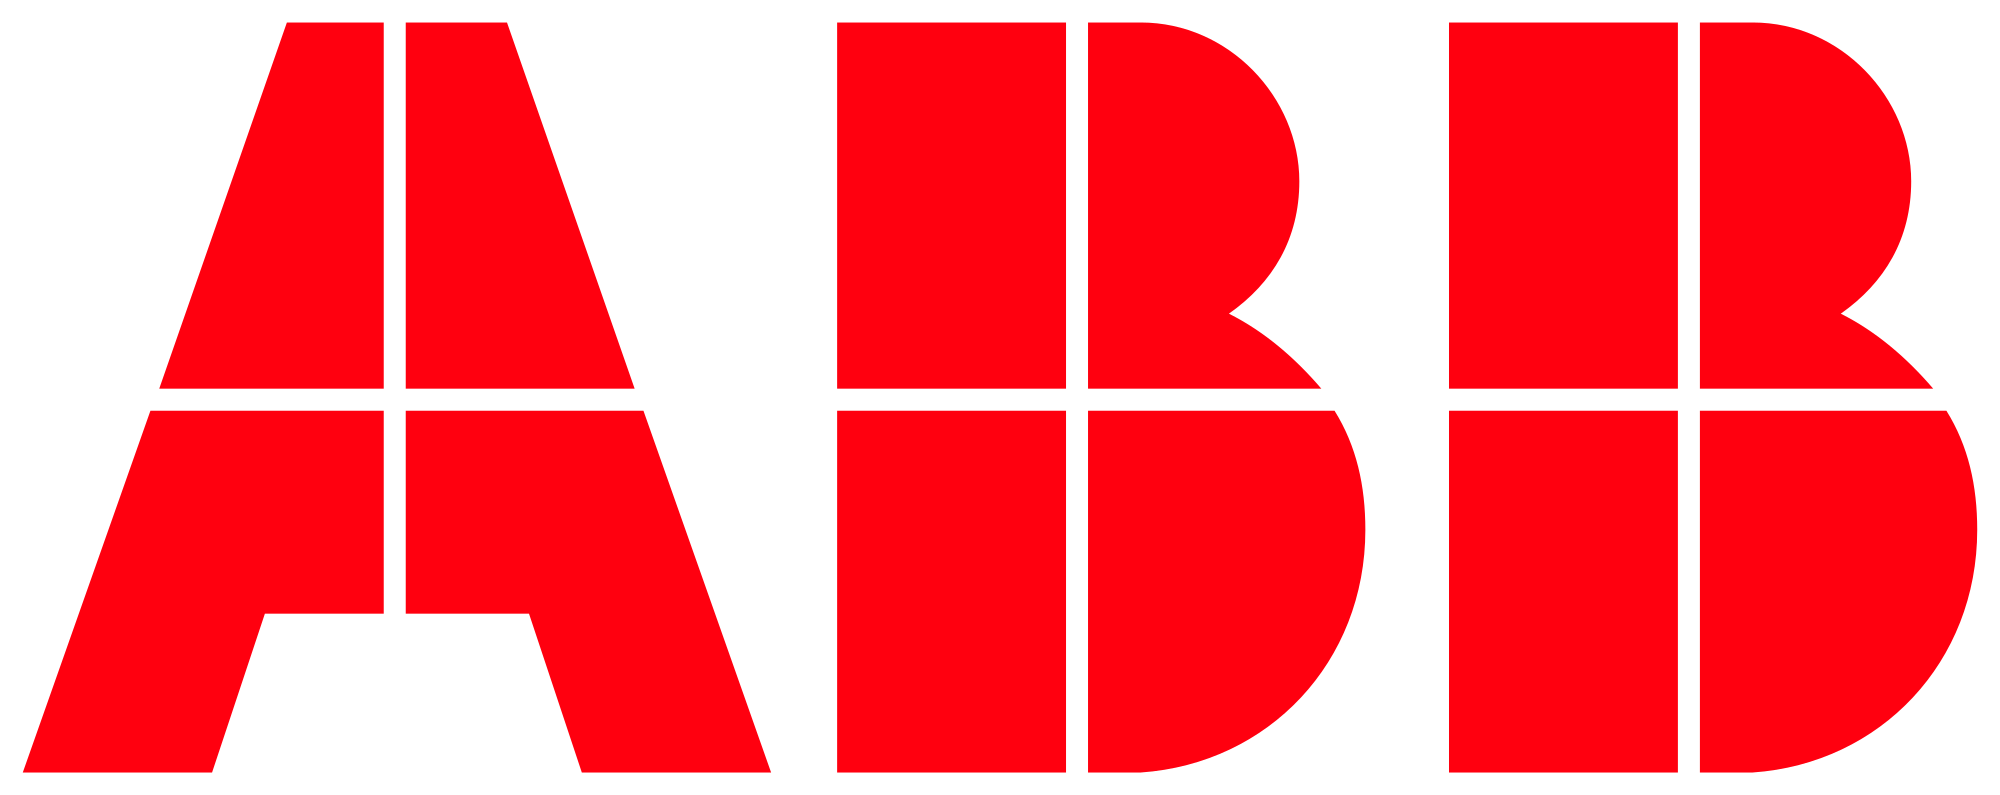 abb technology logo